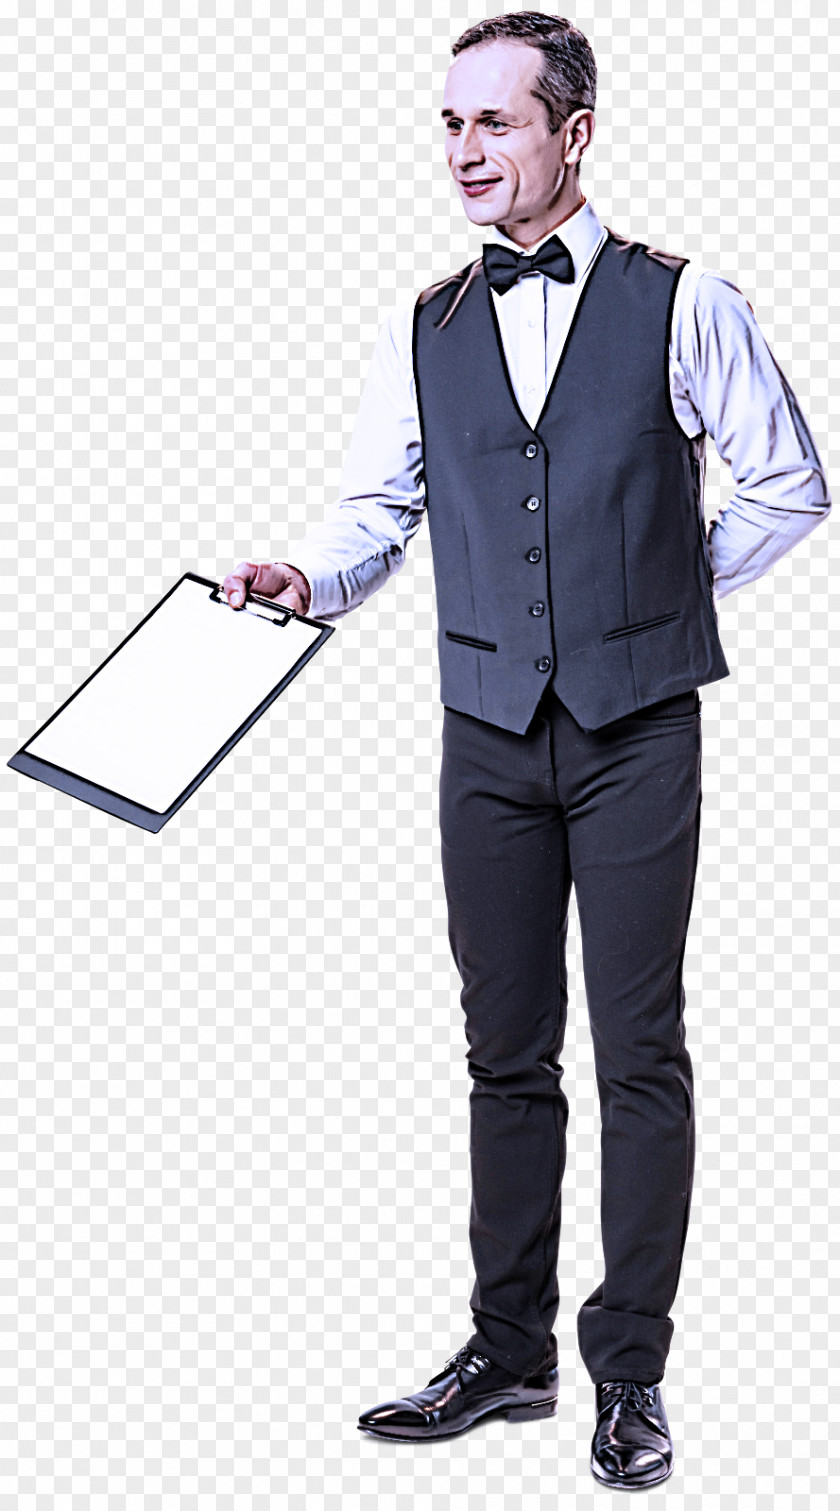 Job Tuxedo Clothing Suit Standing Formal Wear Gentleman PNG